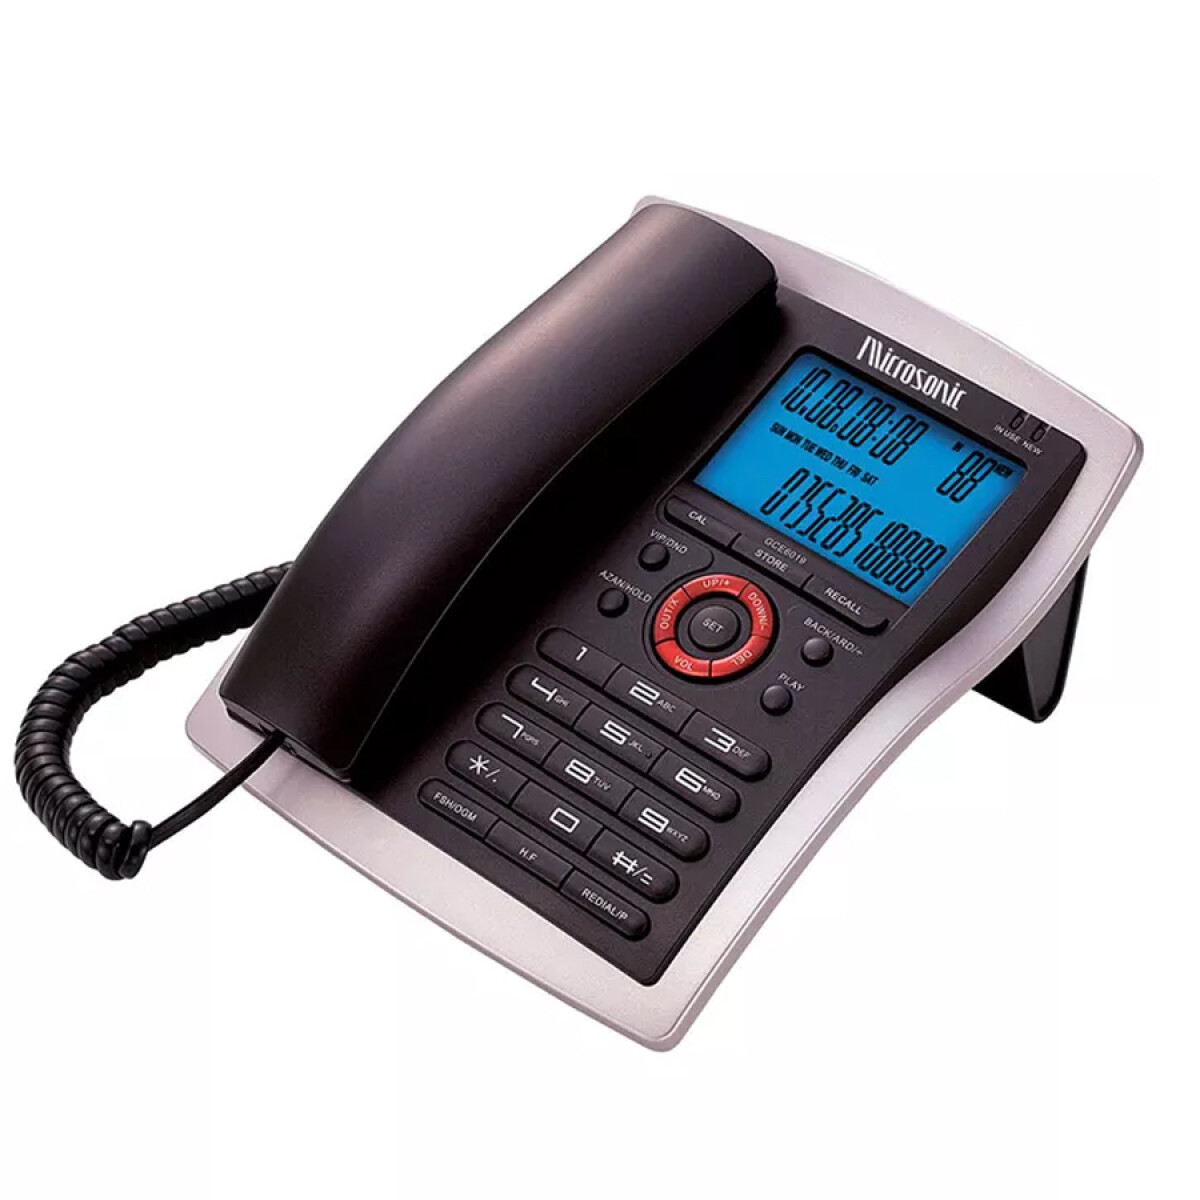 Telefono de Mesa con Captor de Llamadas Microsonic - 001 